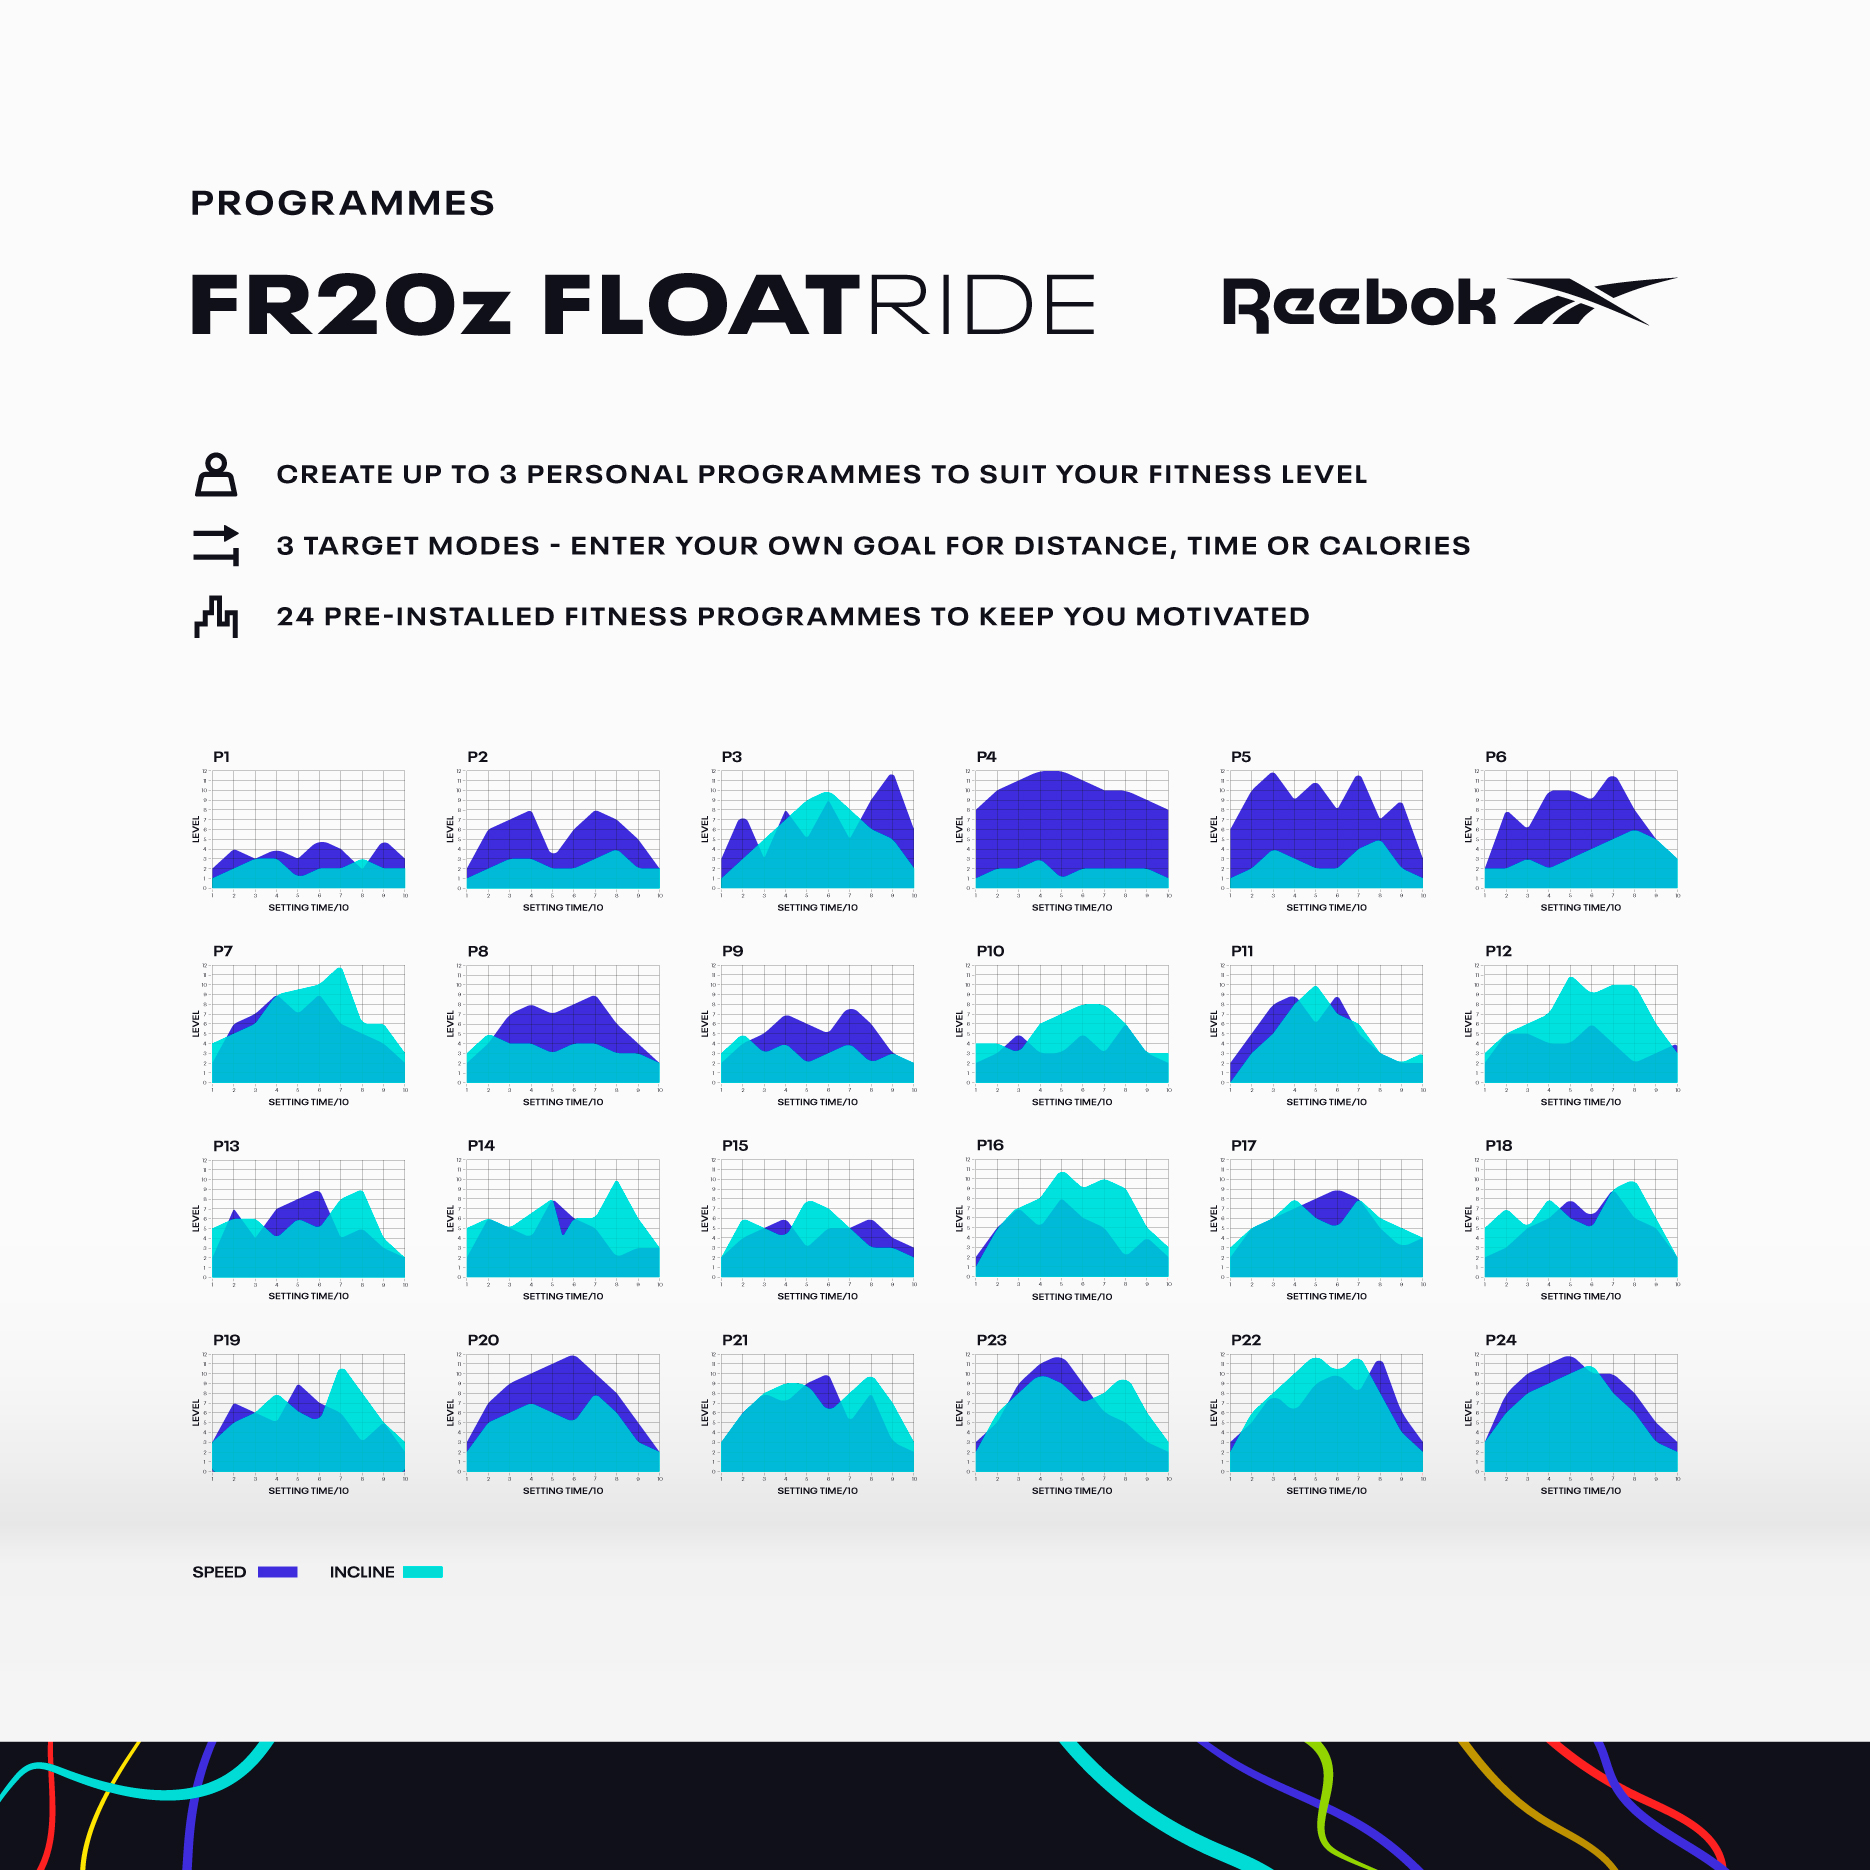 Reebok RVFR-10121BL FR20z Floatride Treadmill